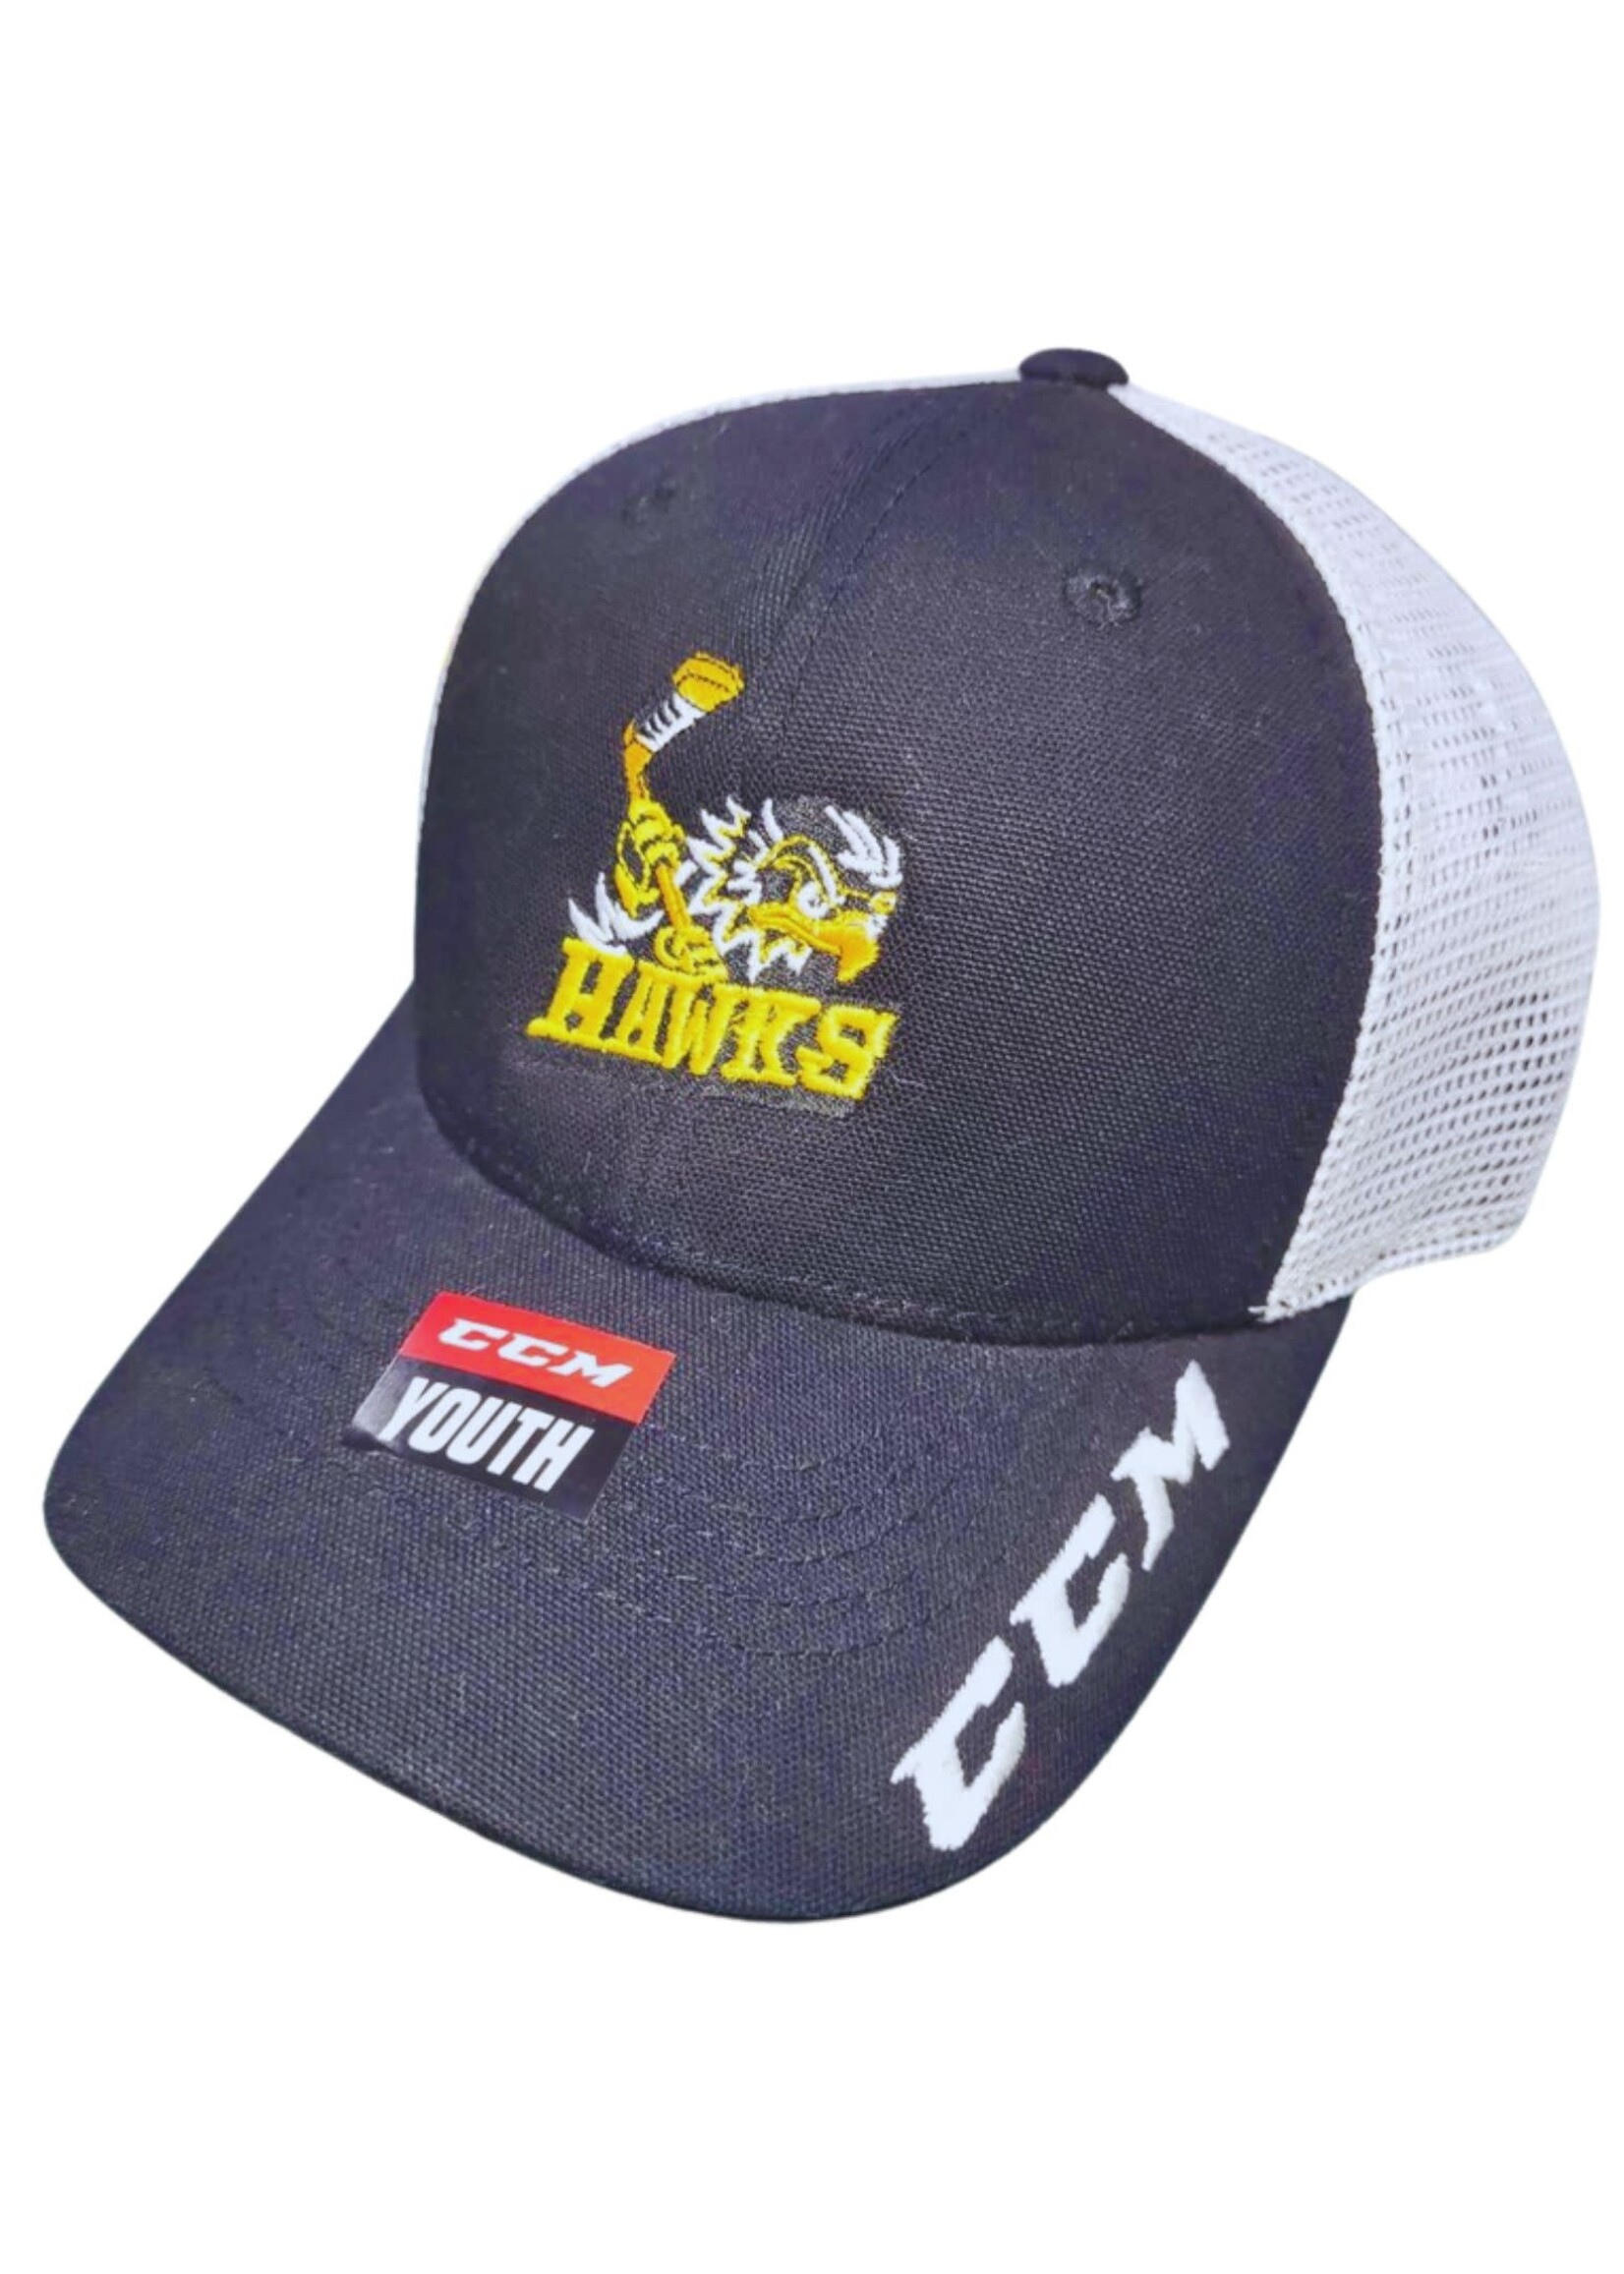 CCM Hockey HAWKS CCM HOCKEY TEAM TRUCK CAP YOUTH